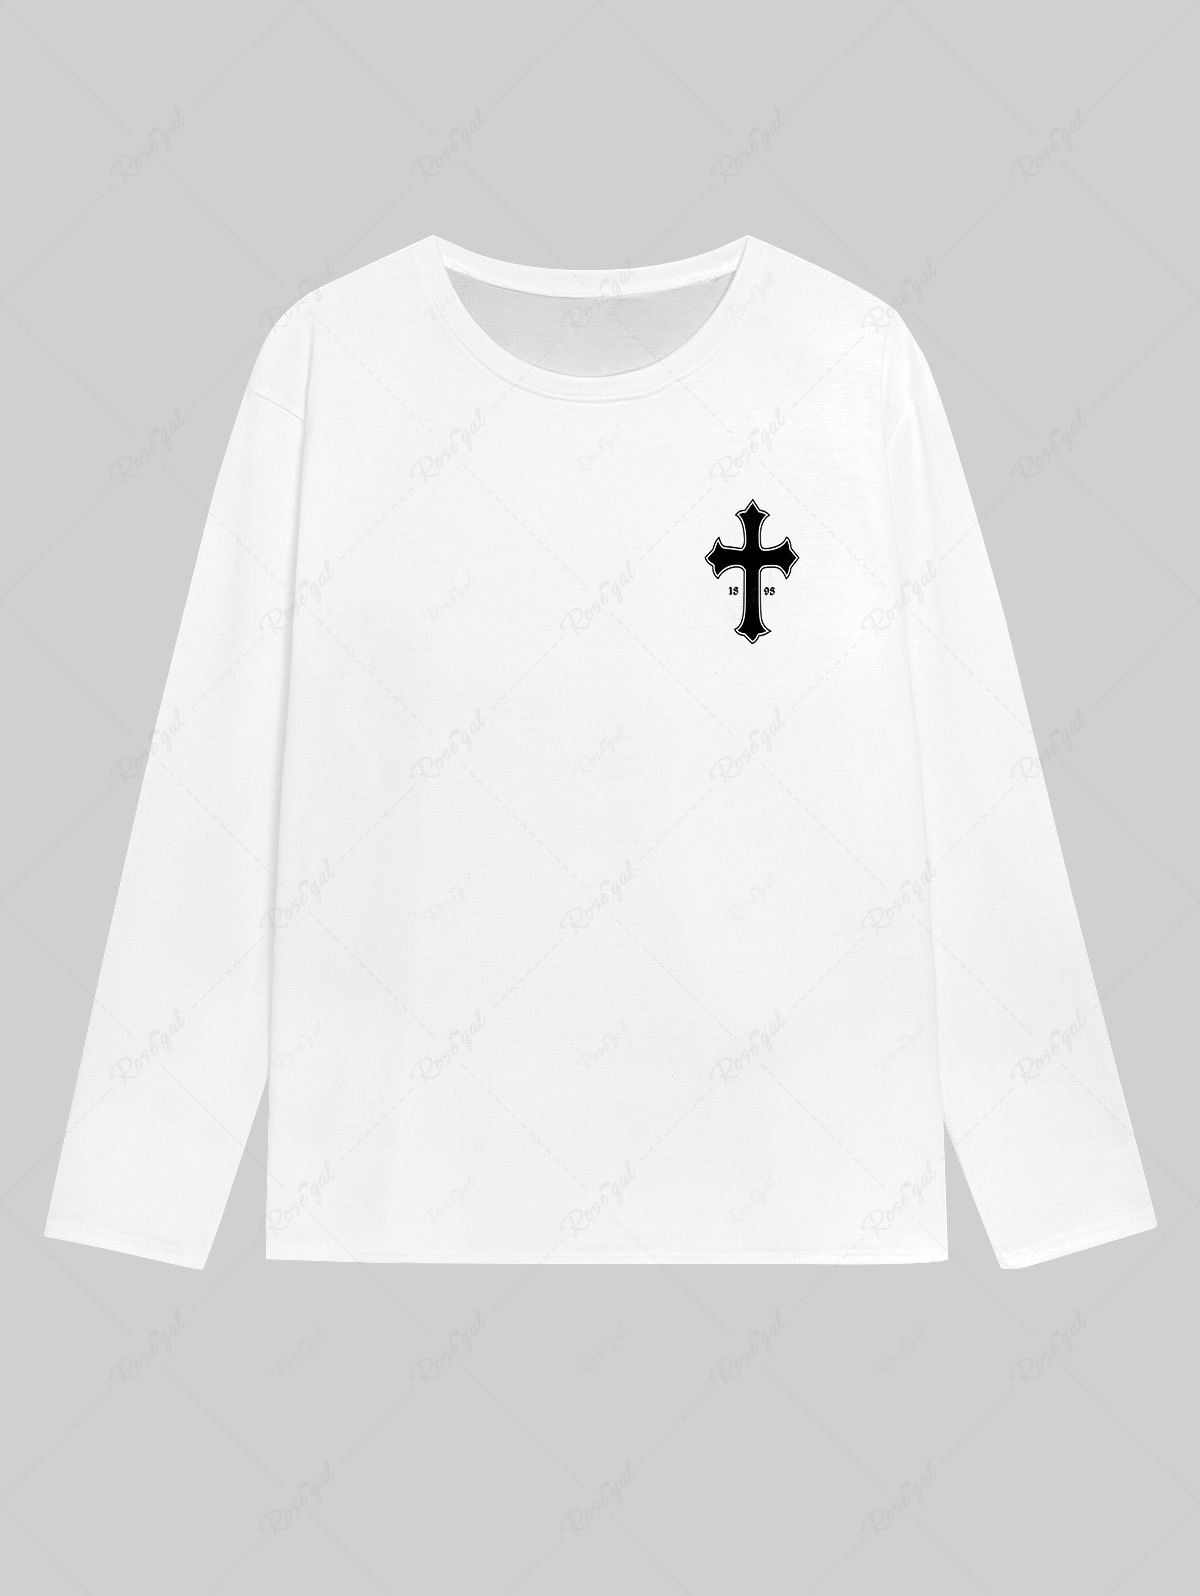 T-shirt Homme Gothique Imprimé Lettre et Croix Blanc L